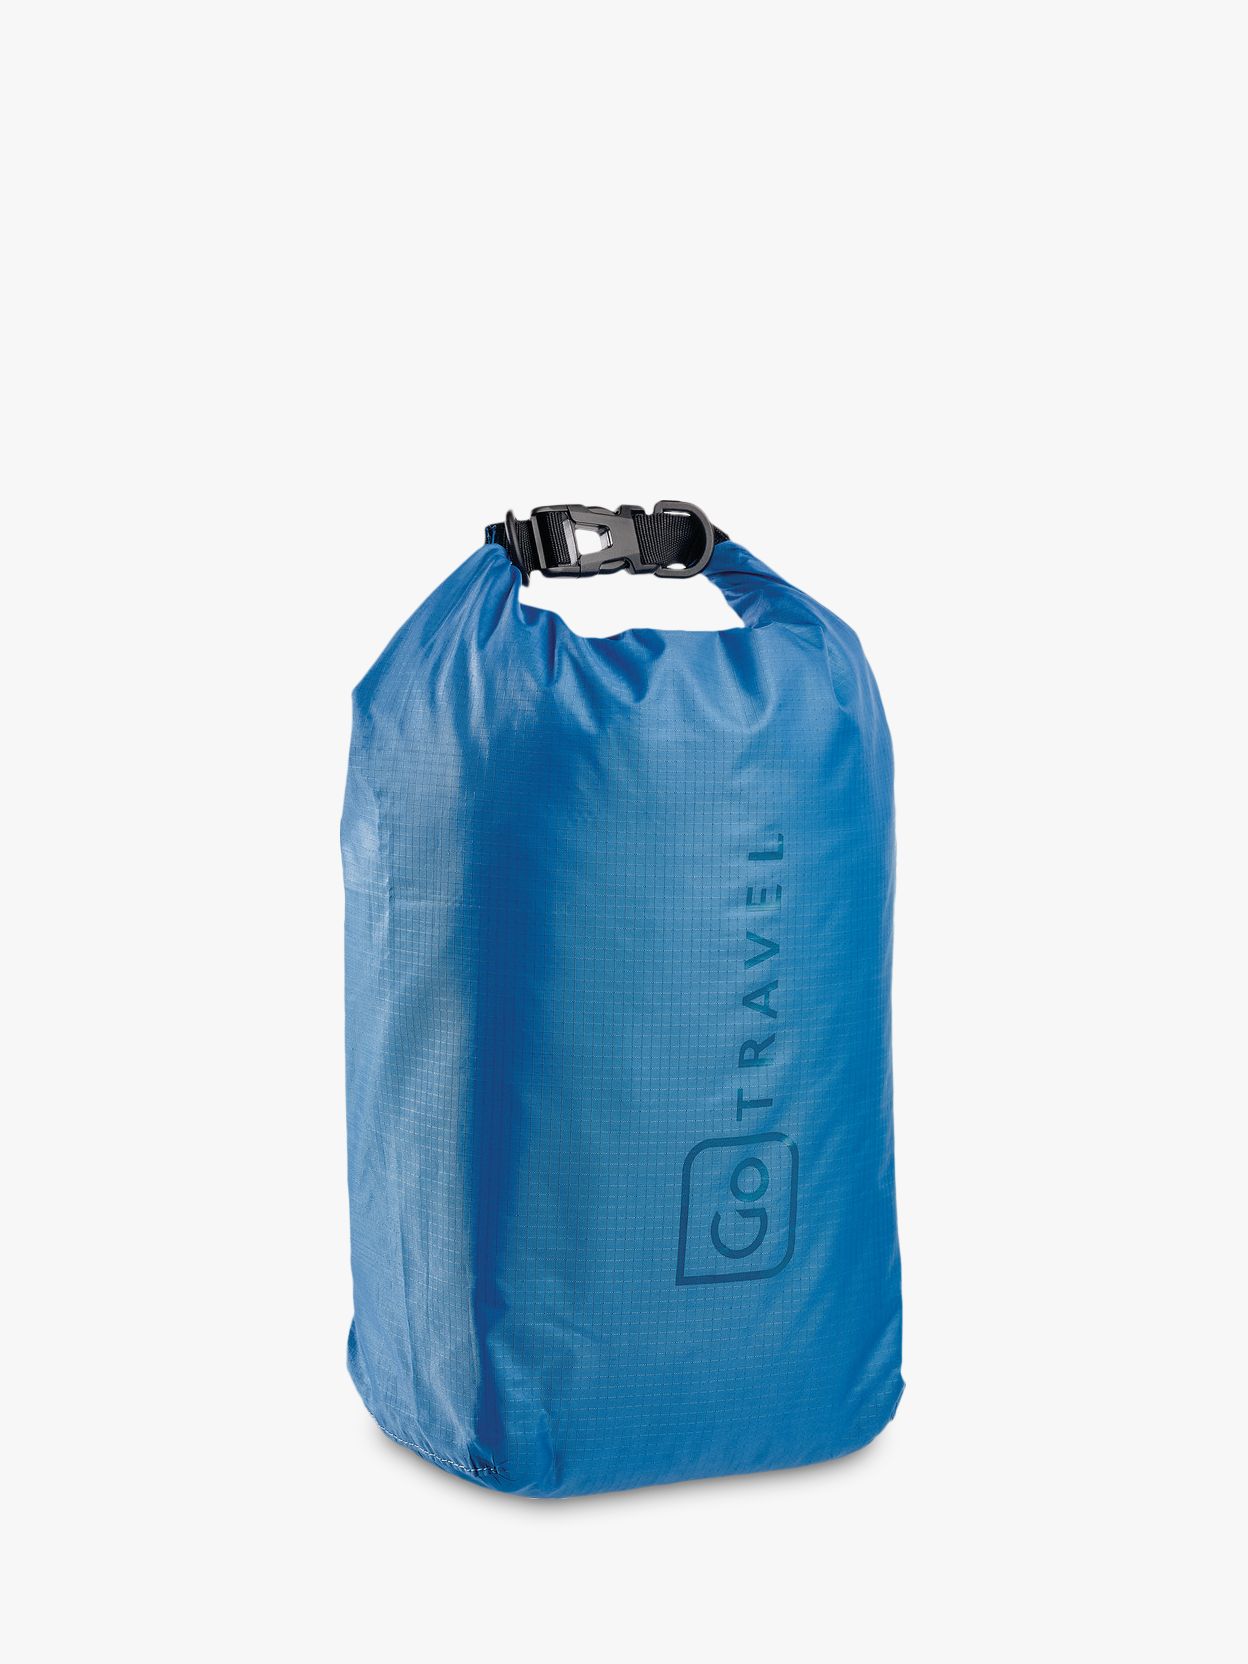 Go Travel Wet/ Dry Bag